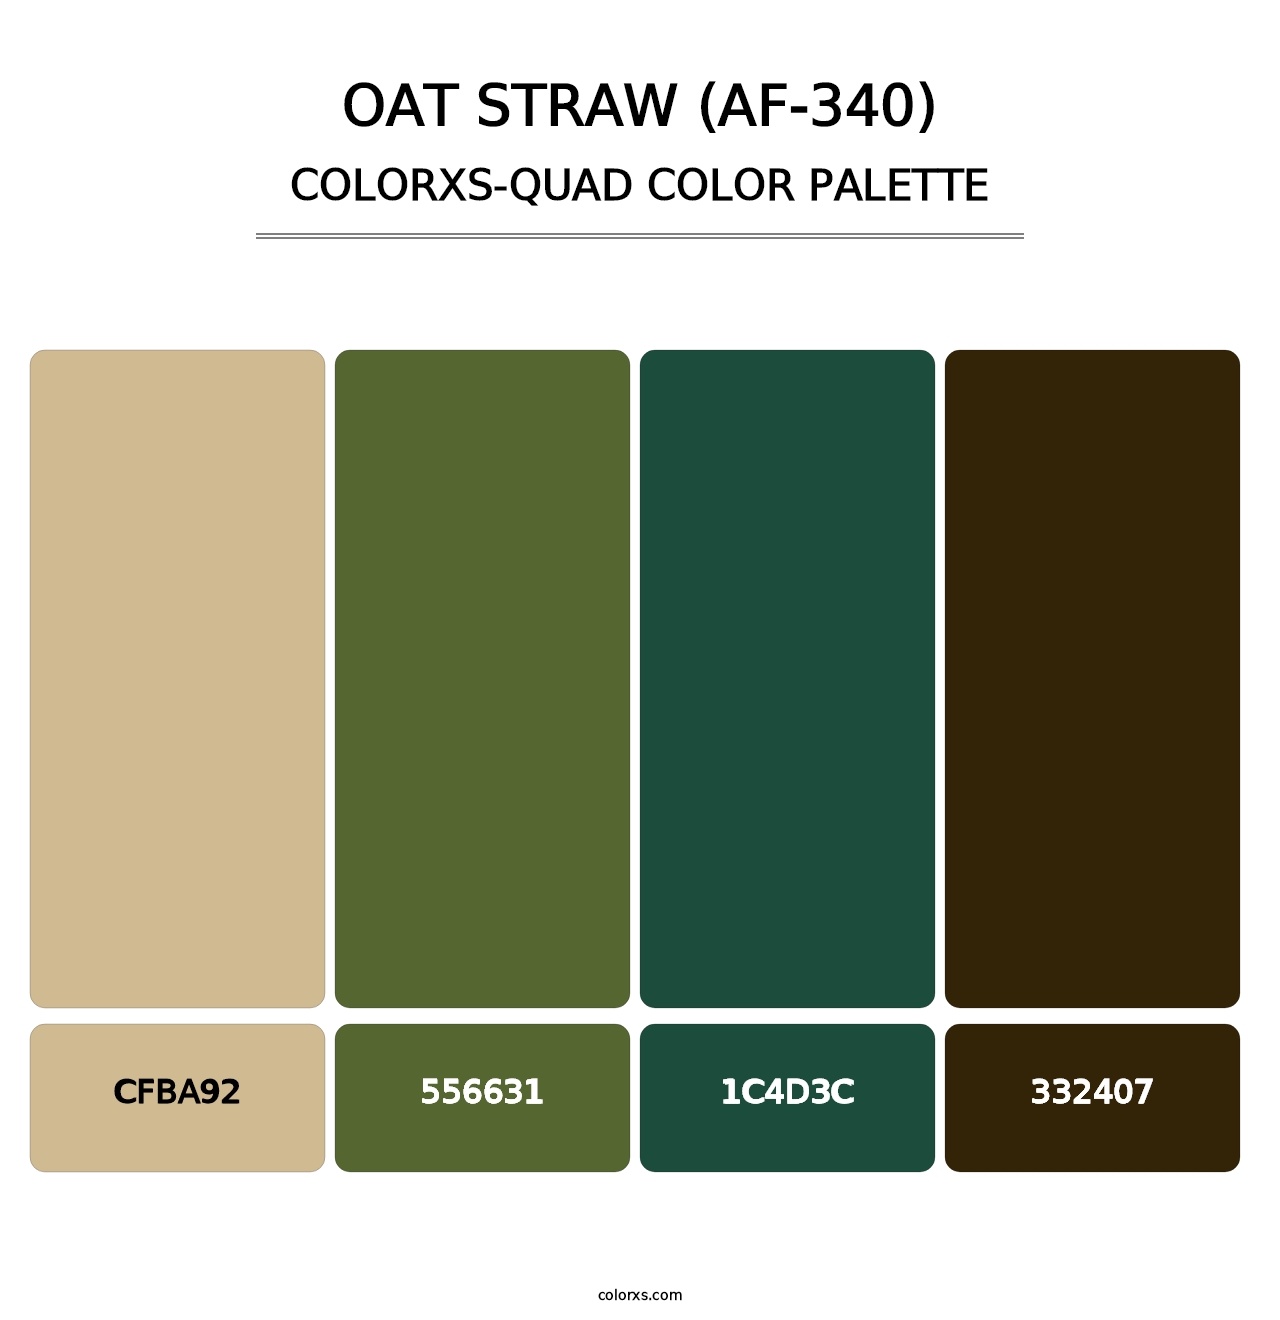 Oat Straw (AF-340) - Colorxs Quad Palette